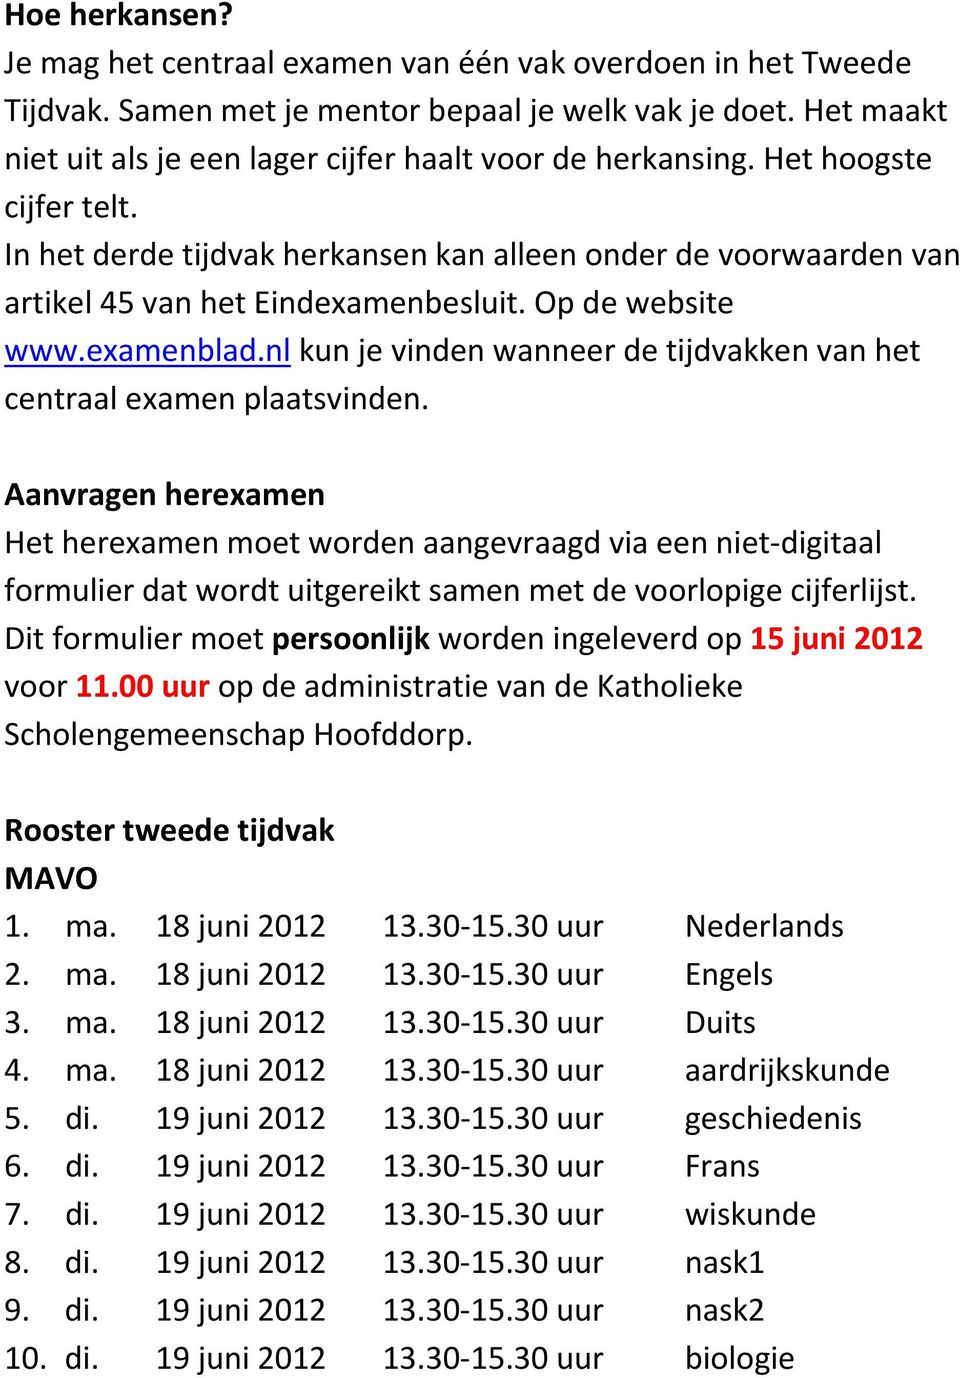 Op de website www.examenblad.nl kun je vinden wanneer de tijdvakken van het centraal examen plaatsvinden.